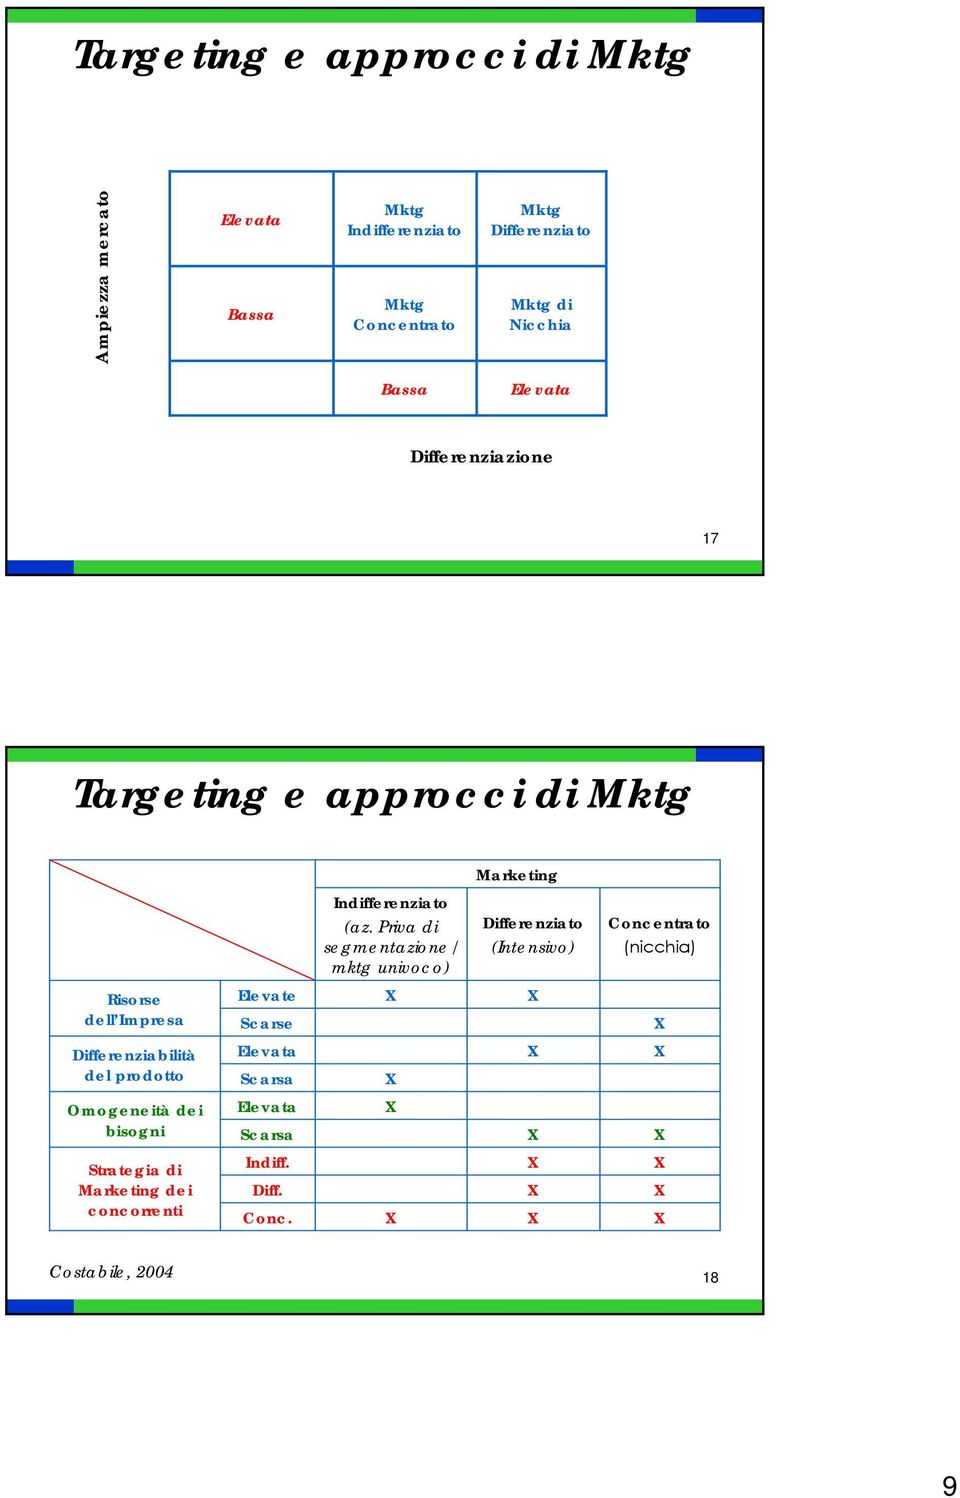 Priva di segmentazione/ mktg univoco) Differenziato (Intensivo) Concentrato (nicchia) Risorse dell Impresa Differenziabilità